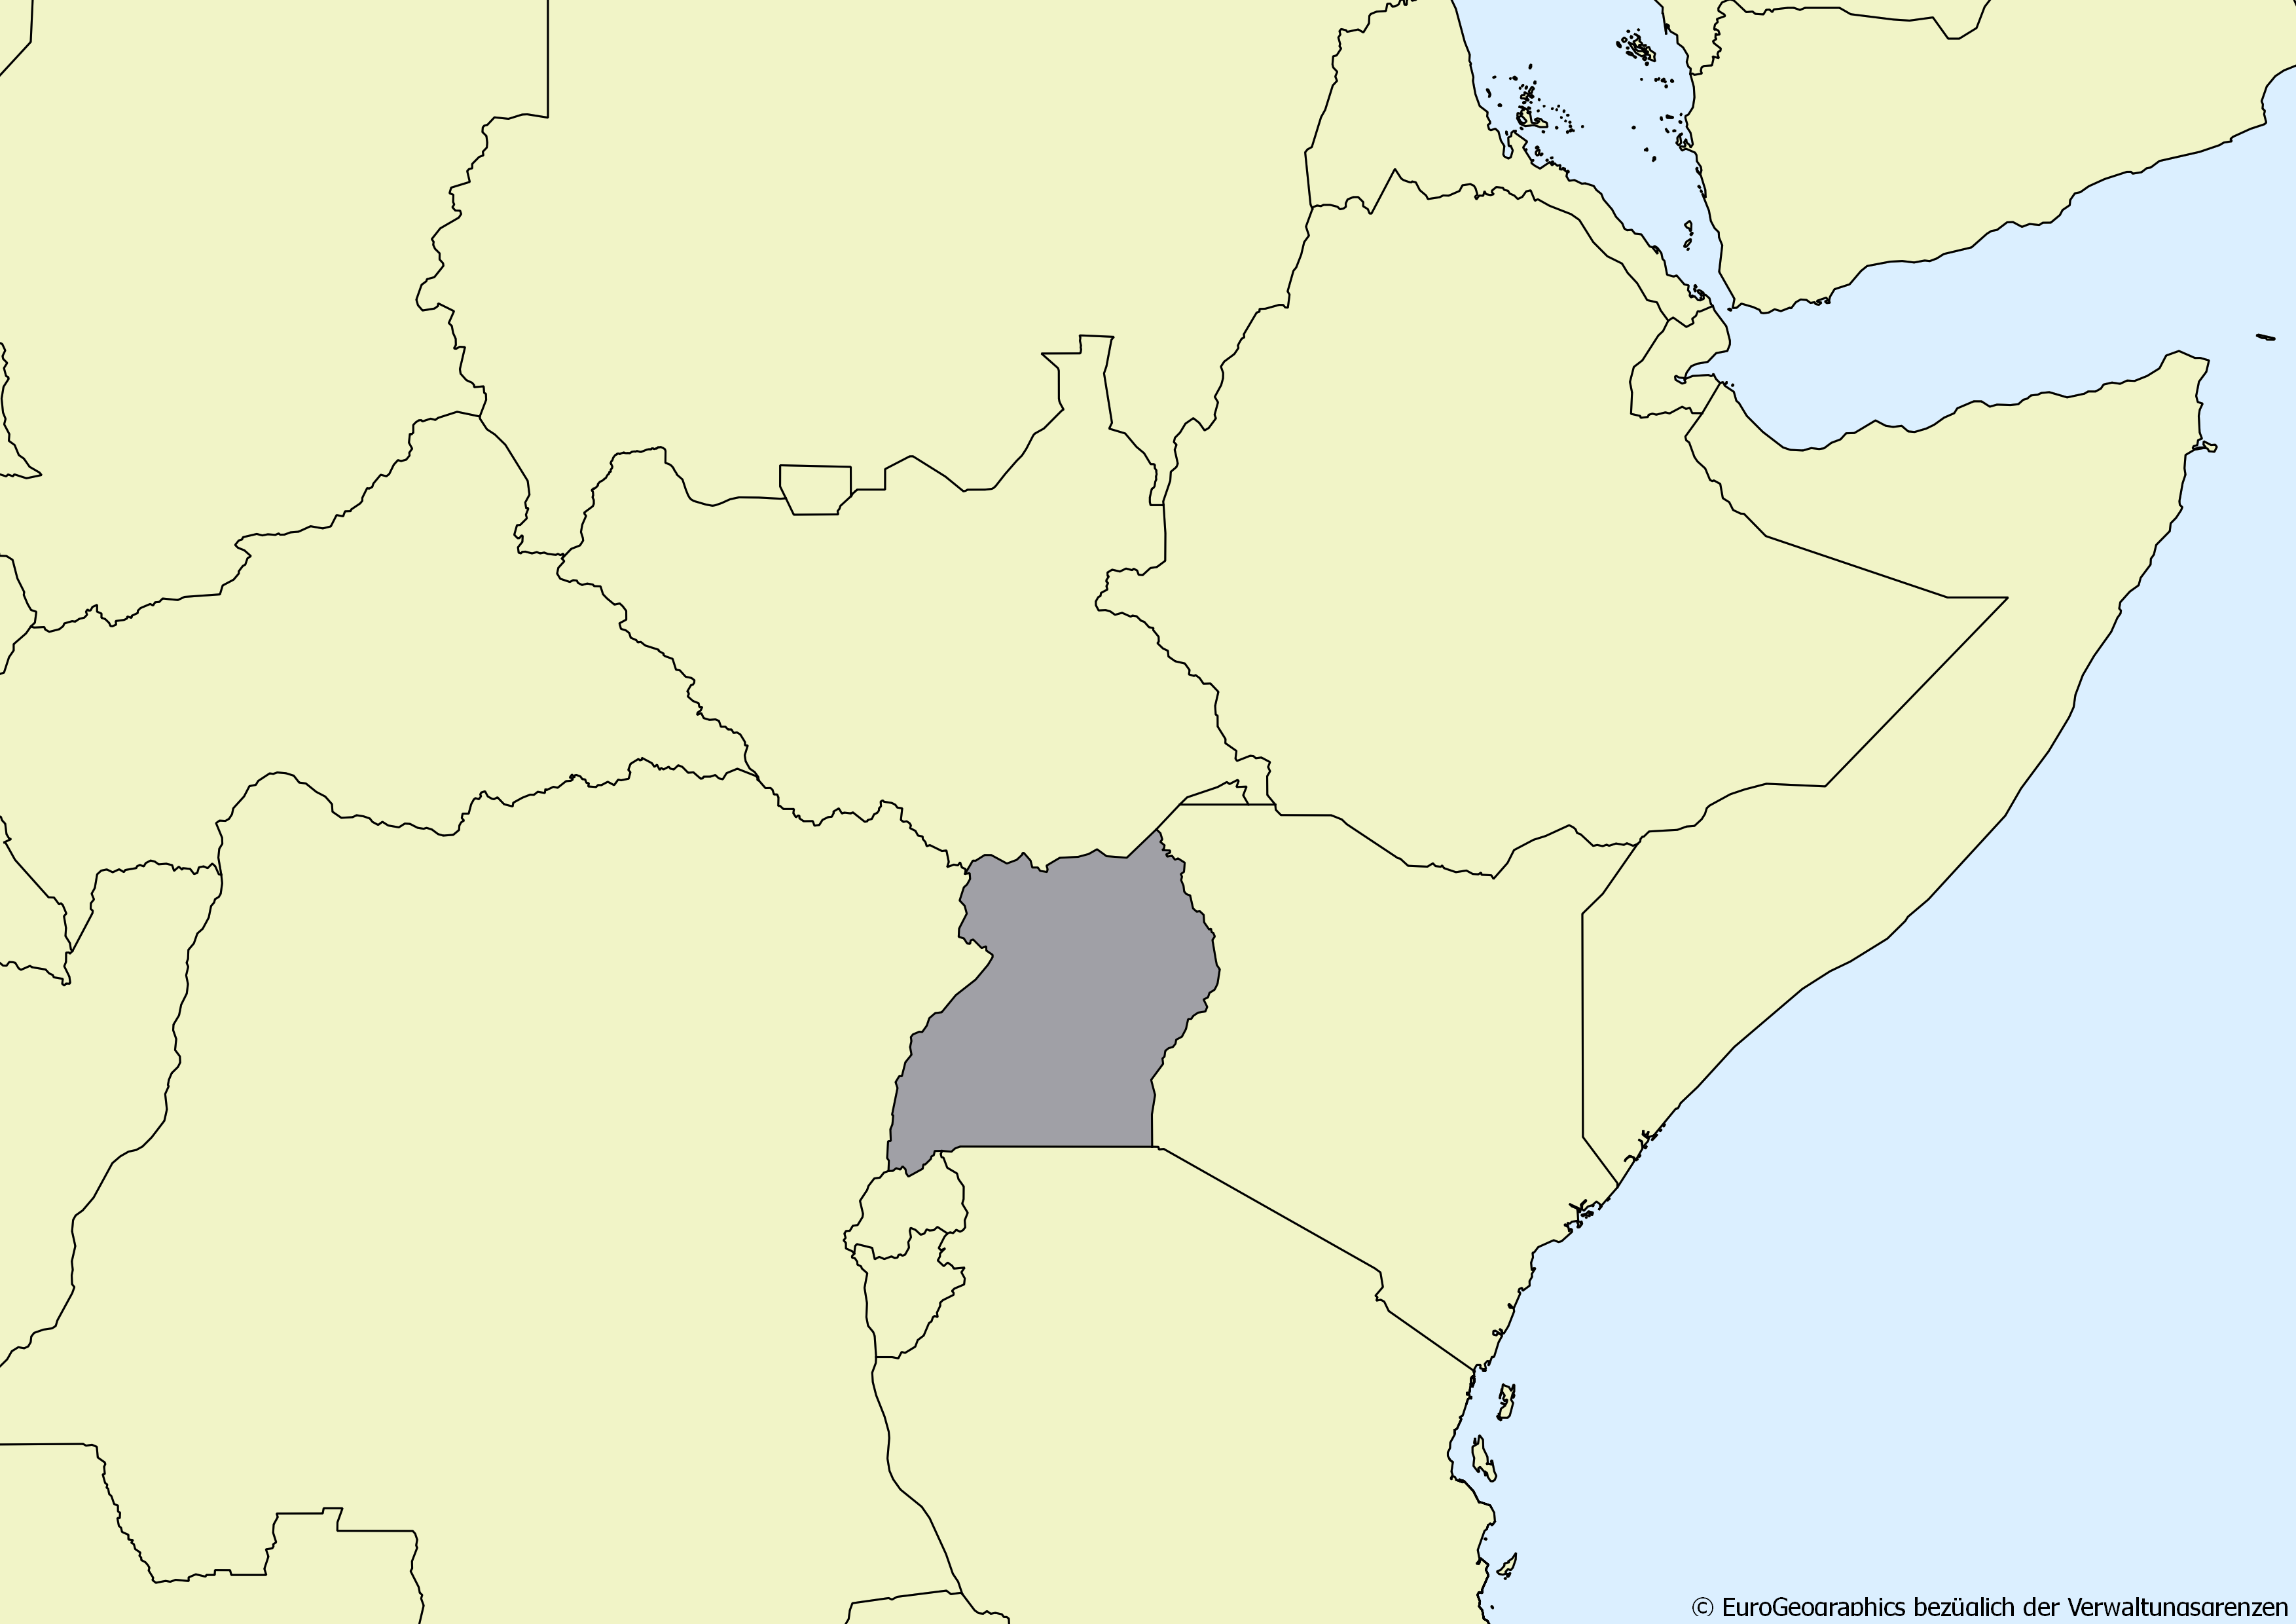 Ausschnitt einer Karte des afrikanischen Kontinents mit Ländergrenzen. Im Zentrum steht Uganda grau hervorgehoben